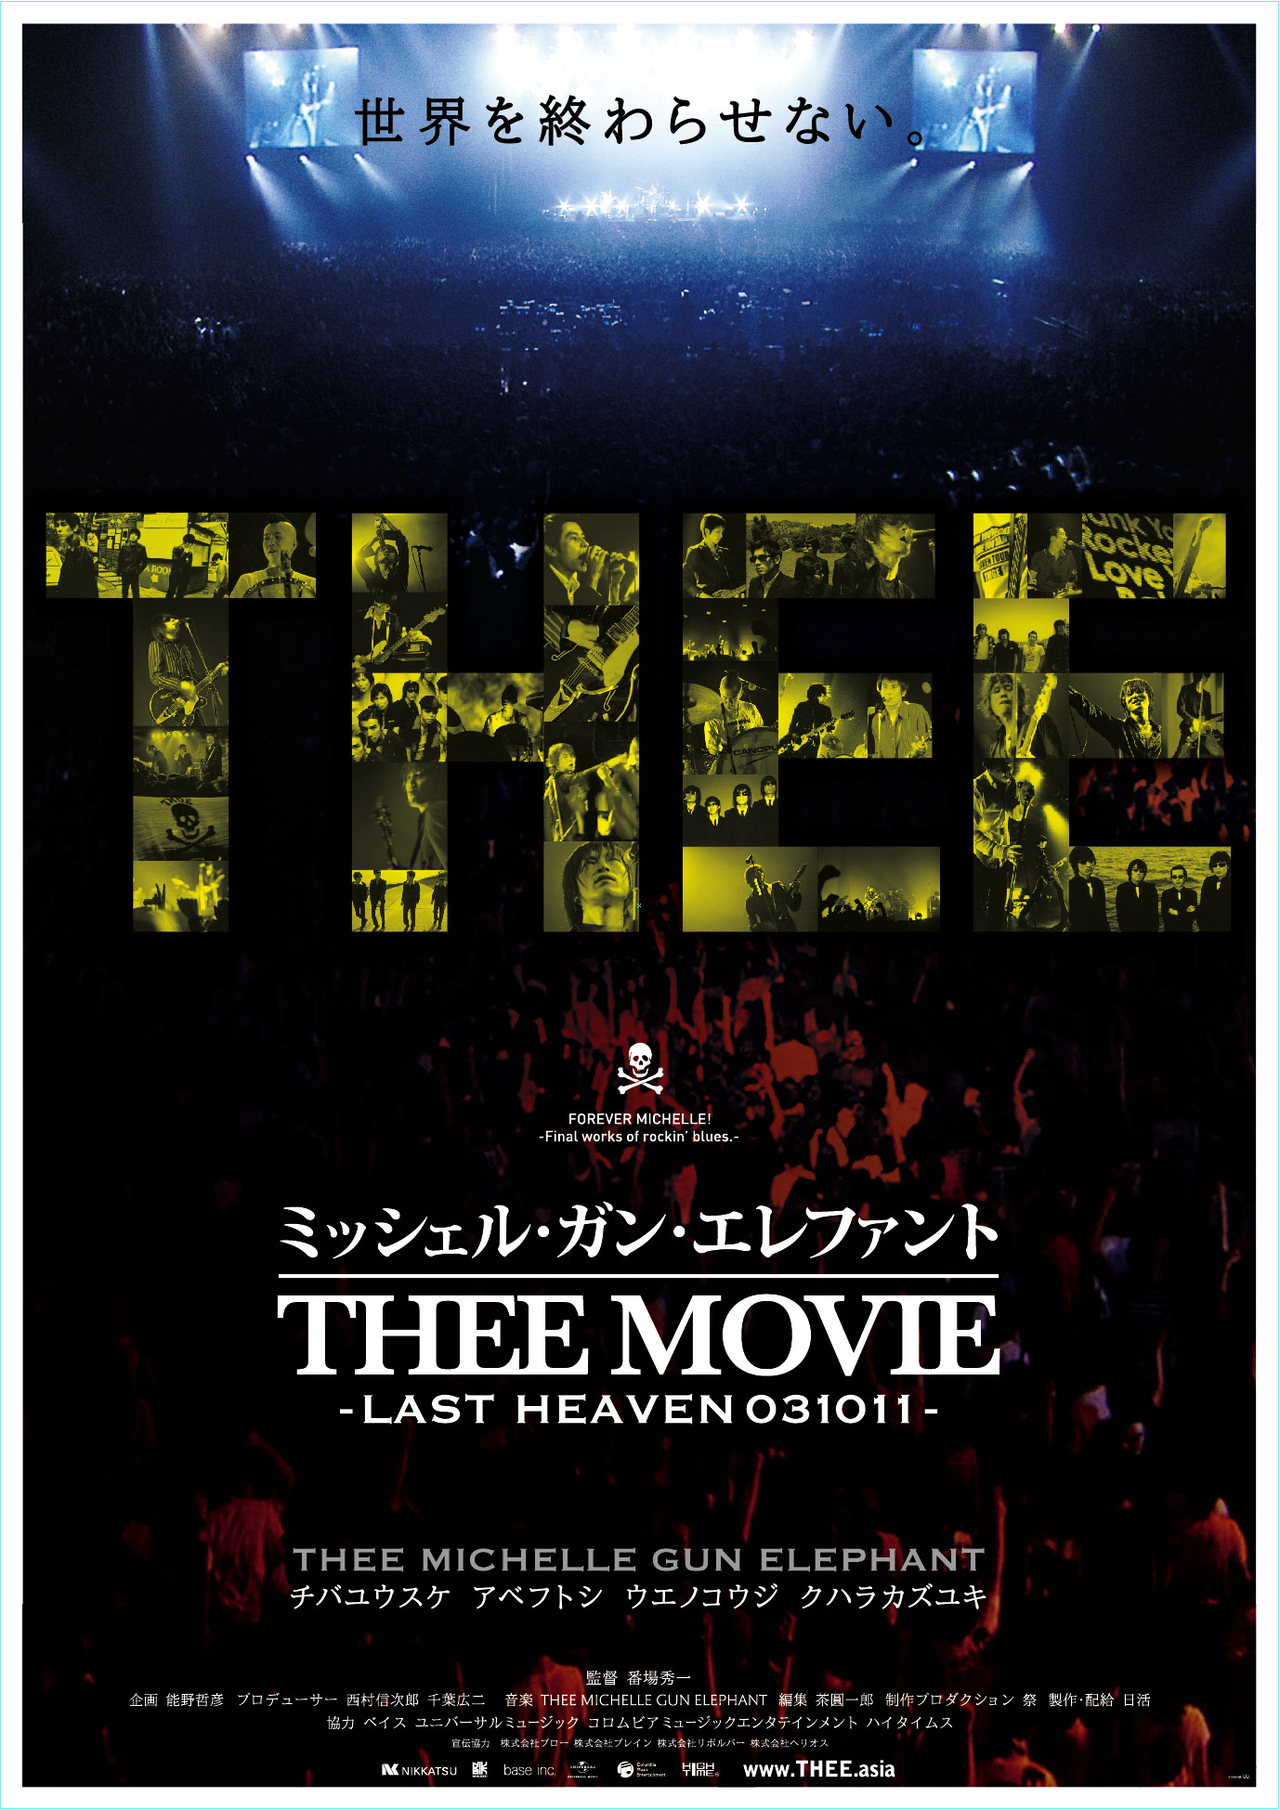 チバユウスケさん追悼 ドキュメンタリー映画「ミッシェル・ガン・エレファント“THEE MOVIE” LAST HEAVEN 031011」上映決定